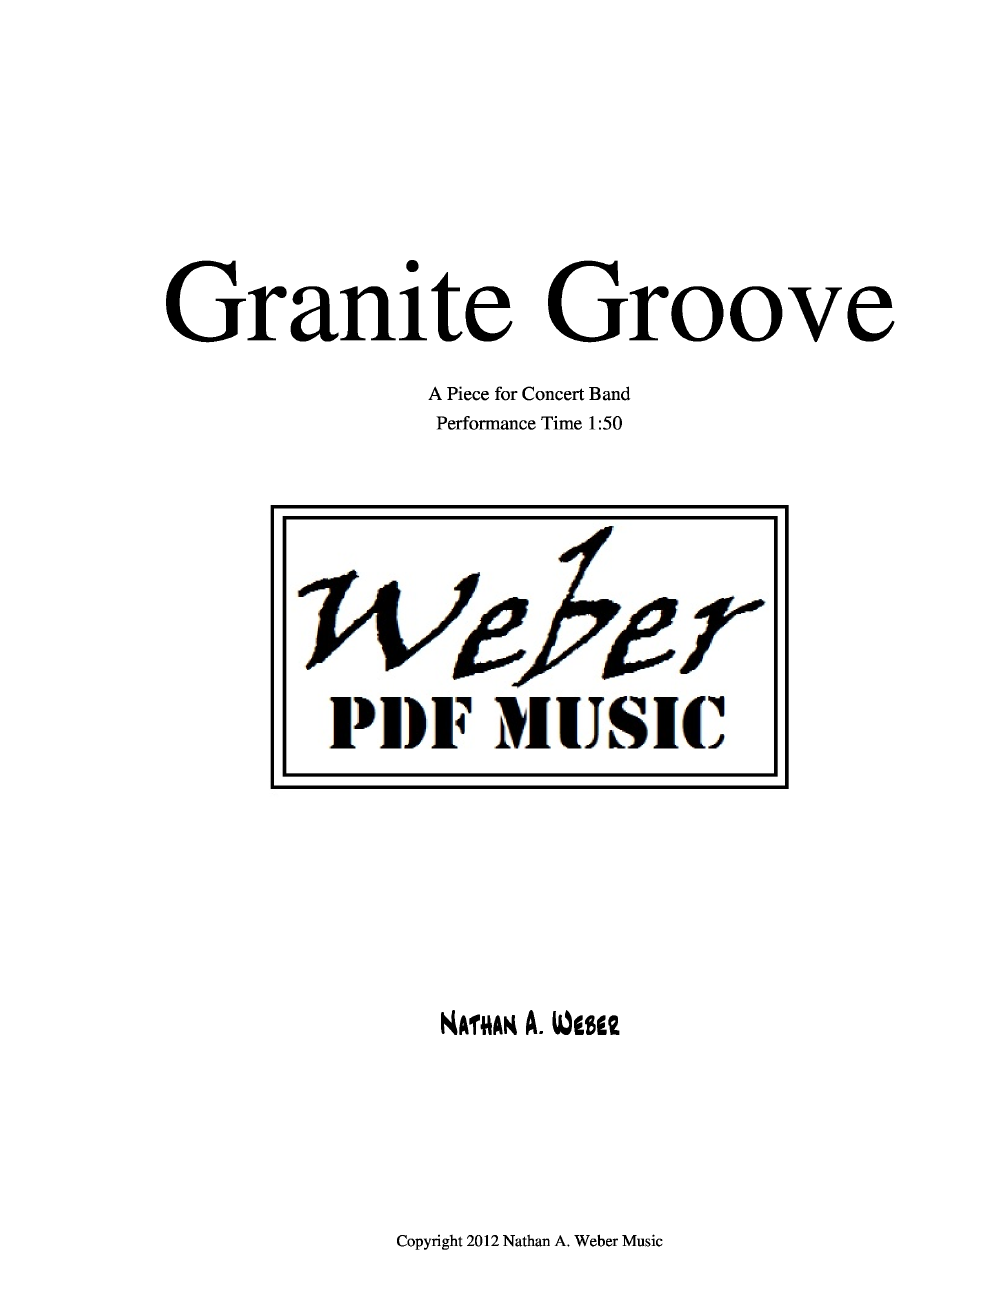 Granite Groove P.O.D.